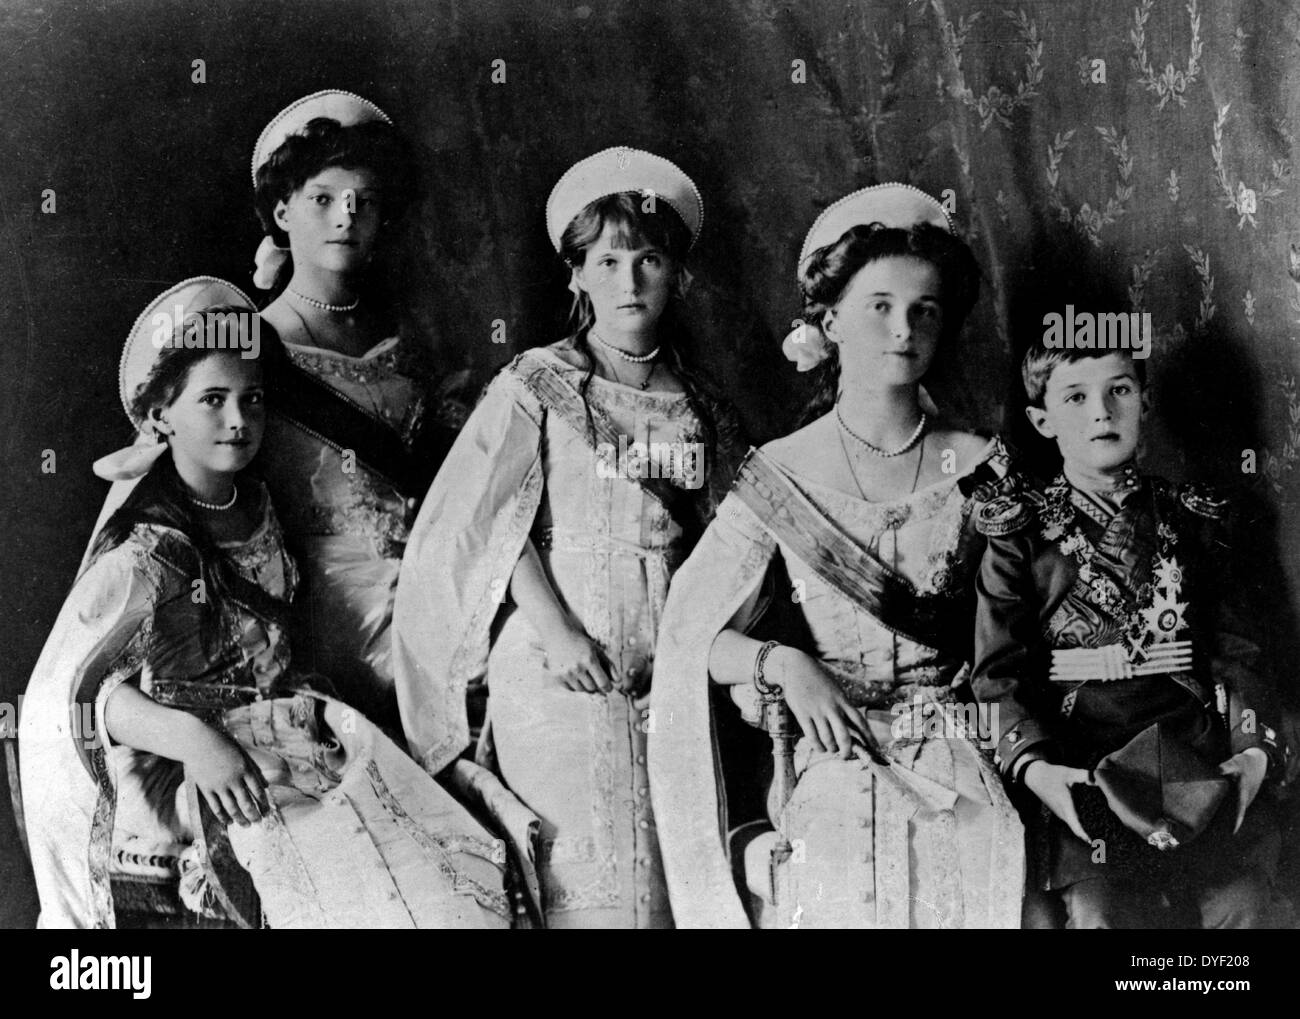 Foto der Romanov Kinder aus der Russischen königlichen Familie in den frühen 1900ern. Übersicht Olga, Tatiana, Maria, Anastasia und Aleksej zusammen für ein offizielles Porträt posieren. Stockfoto